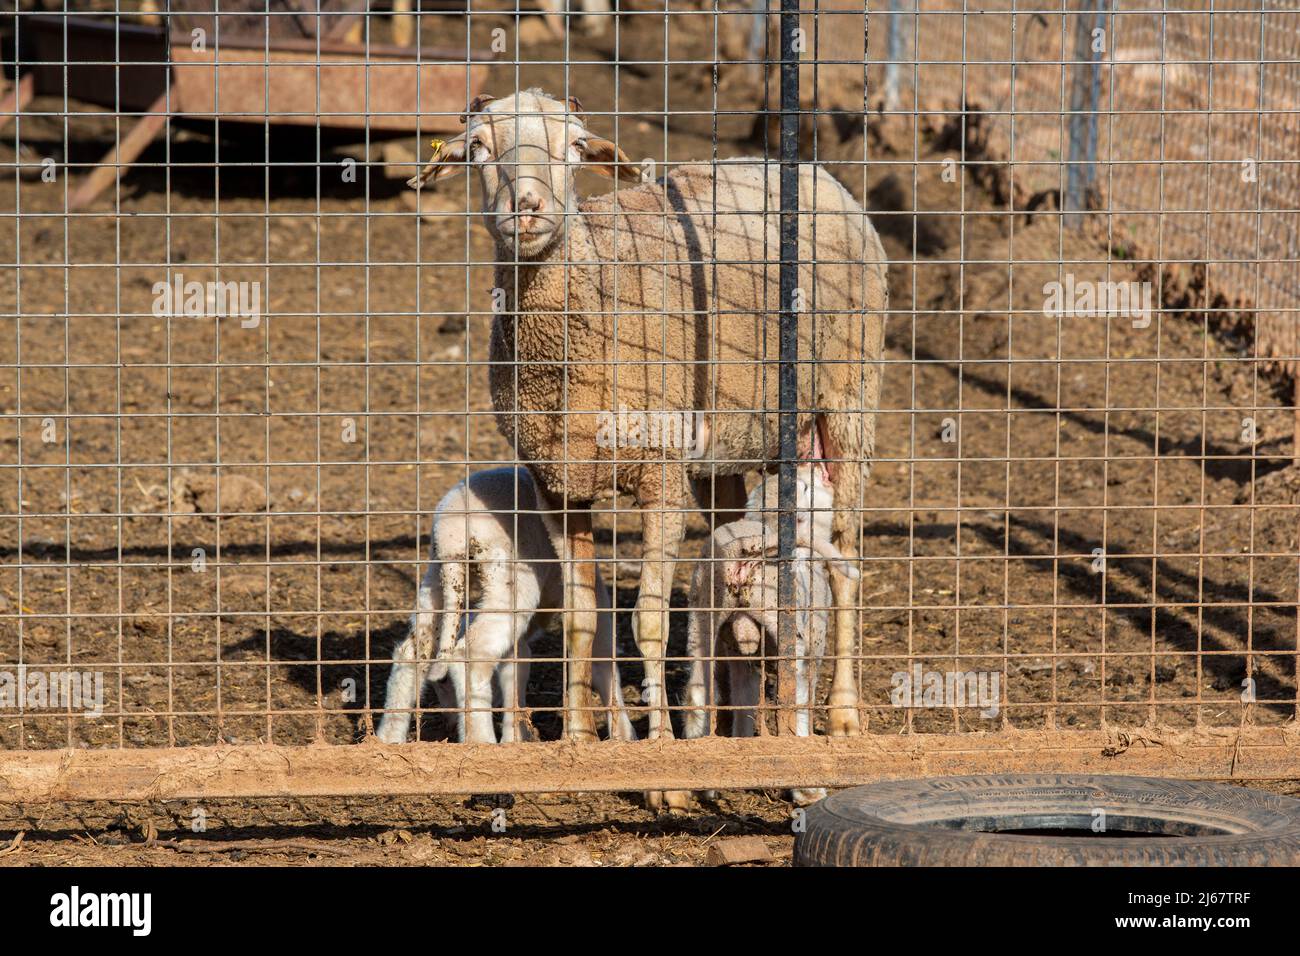 Ein weißes Lamm, das Milch von seiner Mutter säuert. Lamm und Schaf hinter Drahtgeflecht Stockfoto